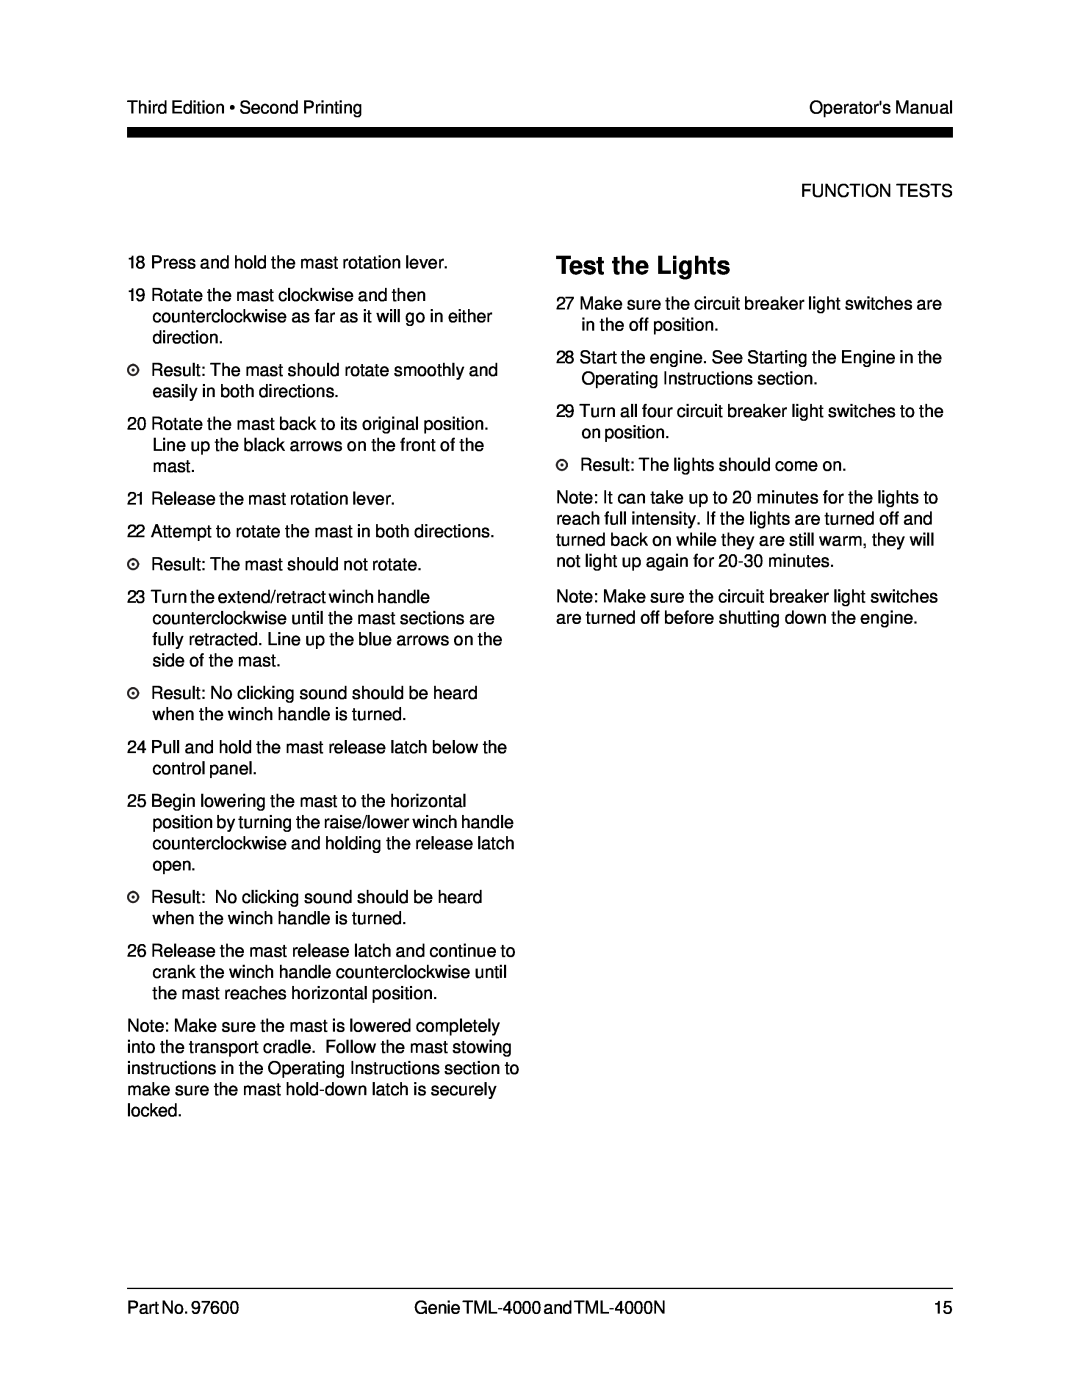 Genie TML-4000N manual Test the Lights 